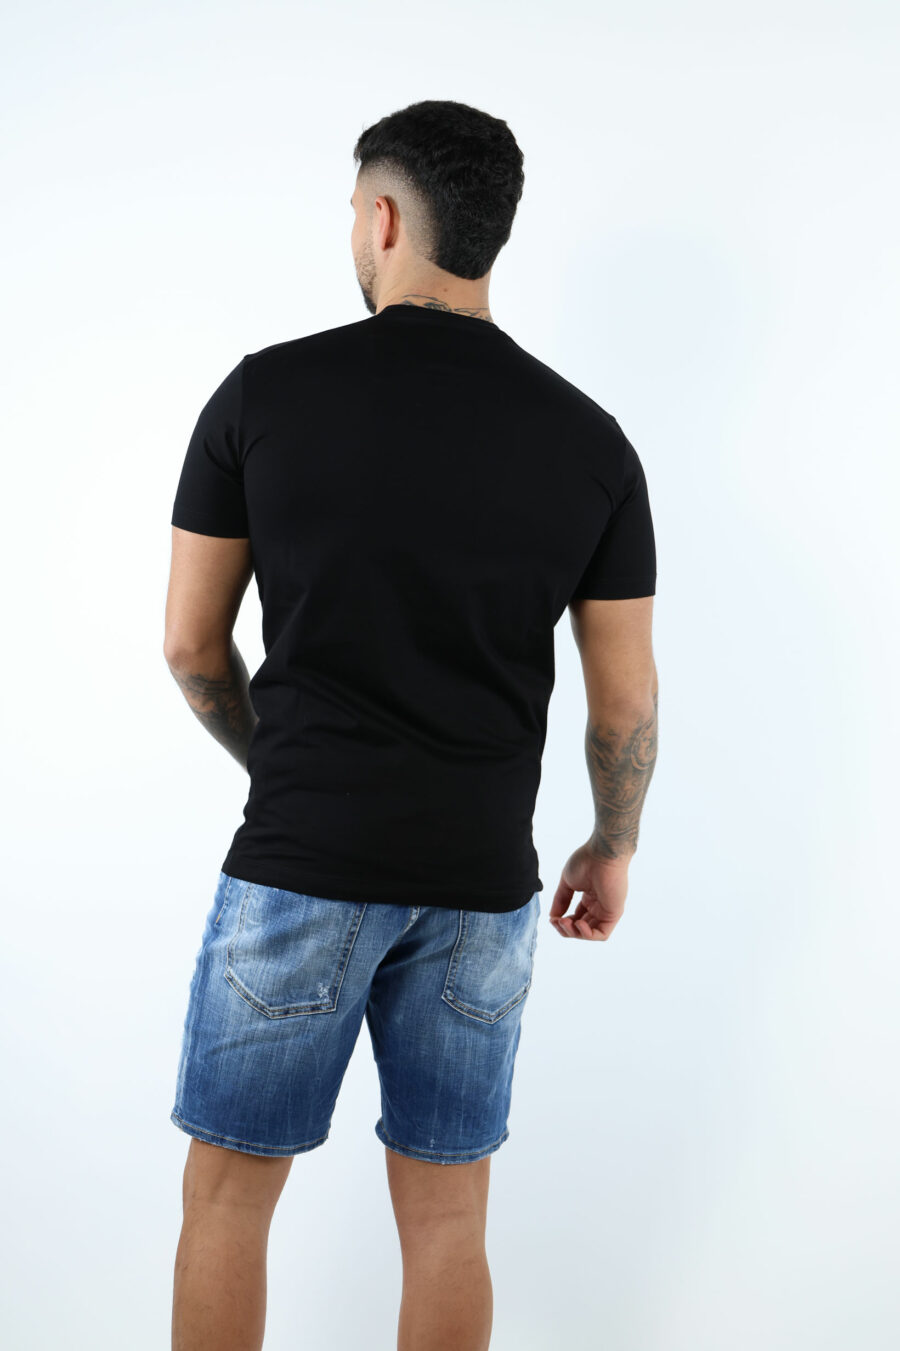 Black T-shirt with basketball dog maxilogo - 106895